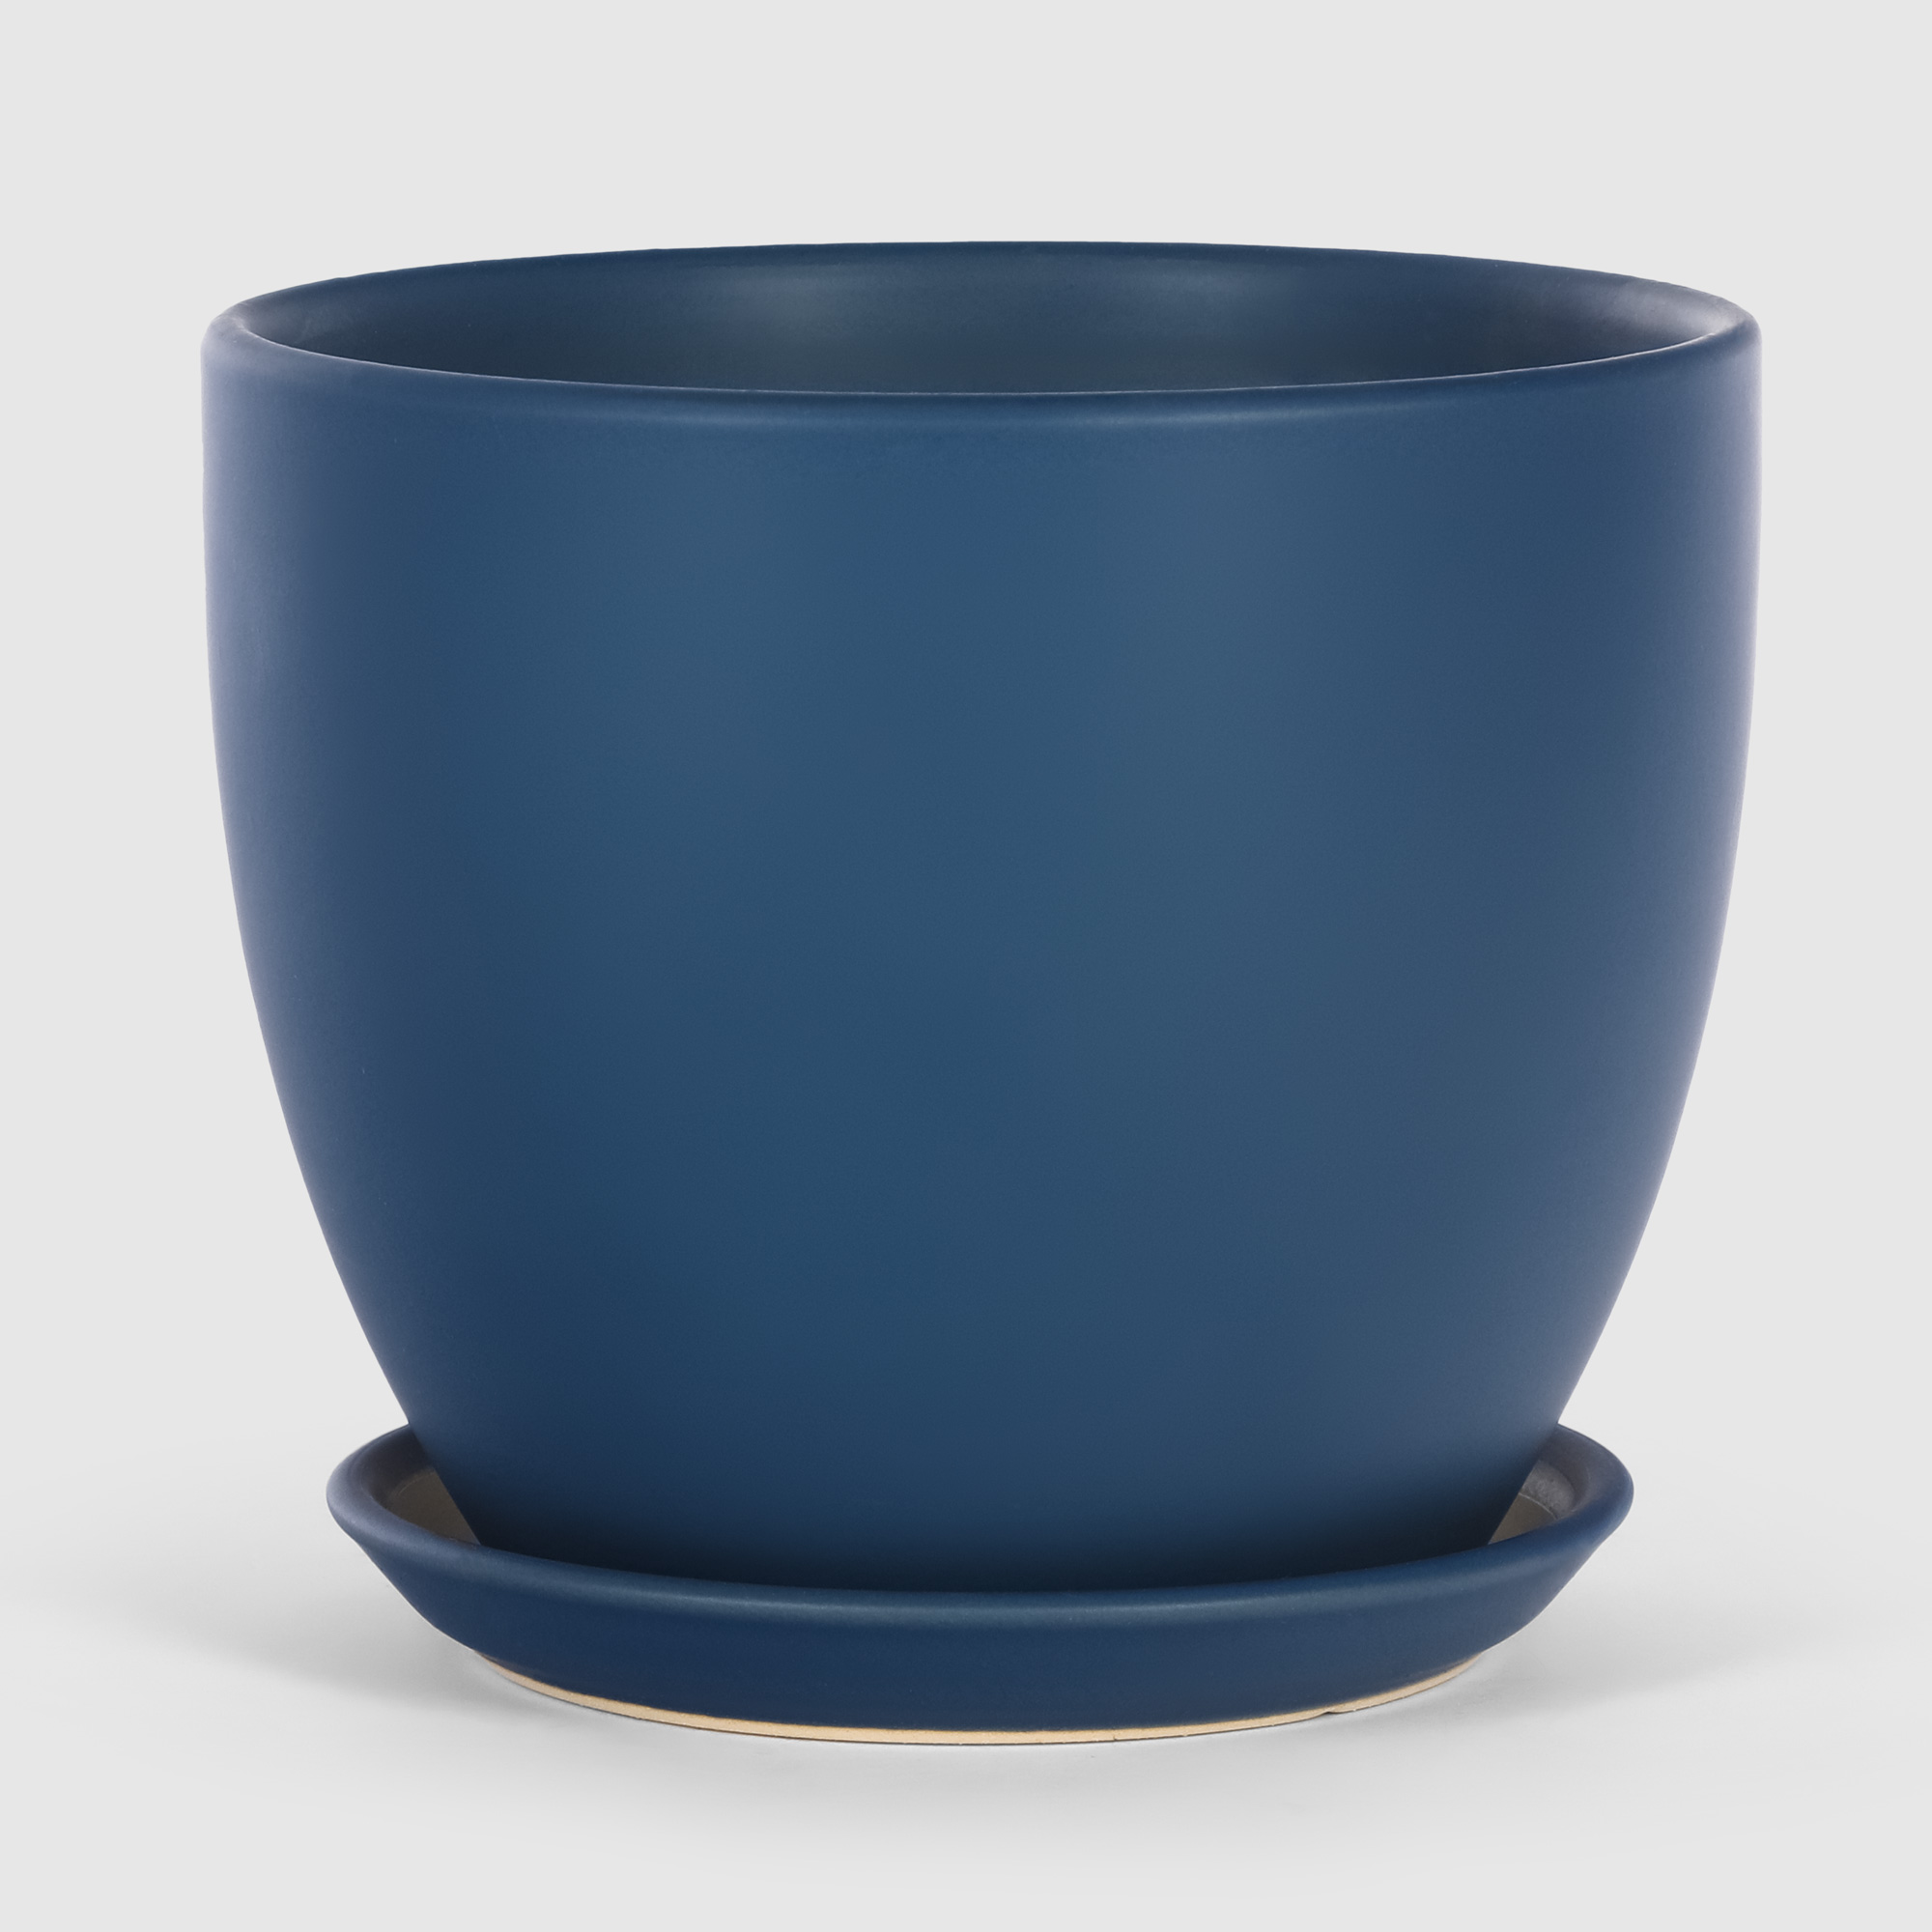 Кашпо керамическое для цветов Shine Pots 18x16см синий матовый кашпо керамическое для ов shine pots 18x16см синий матовый